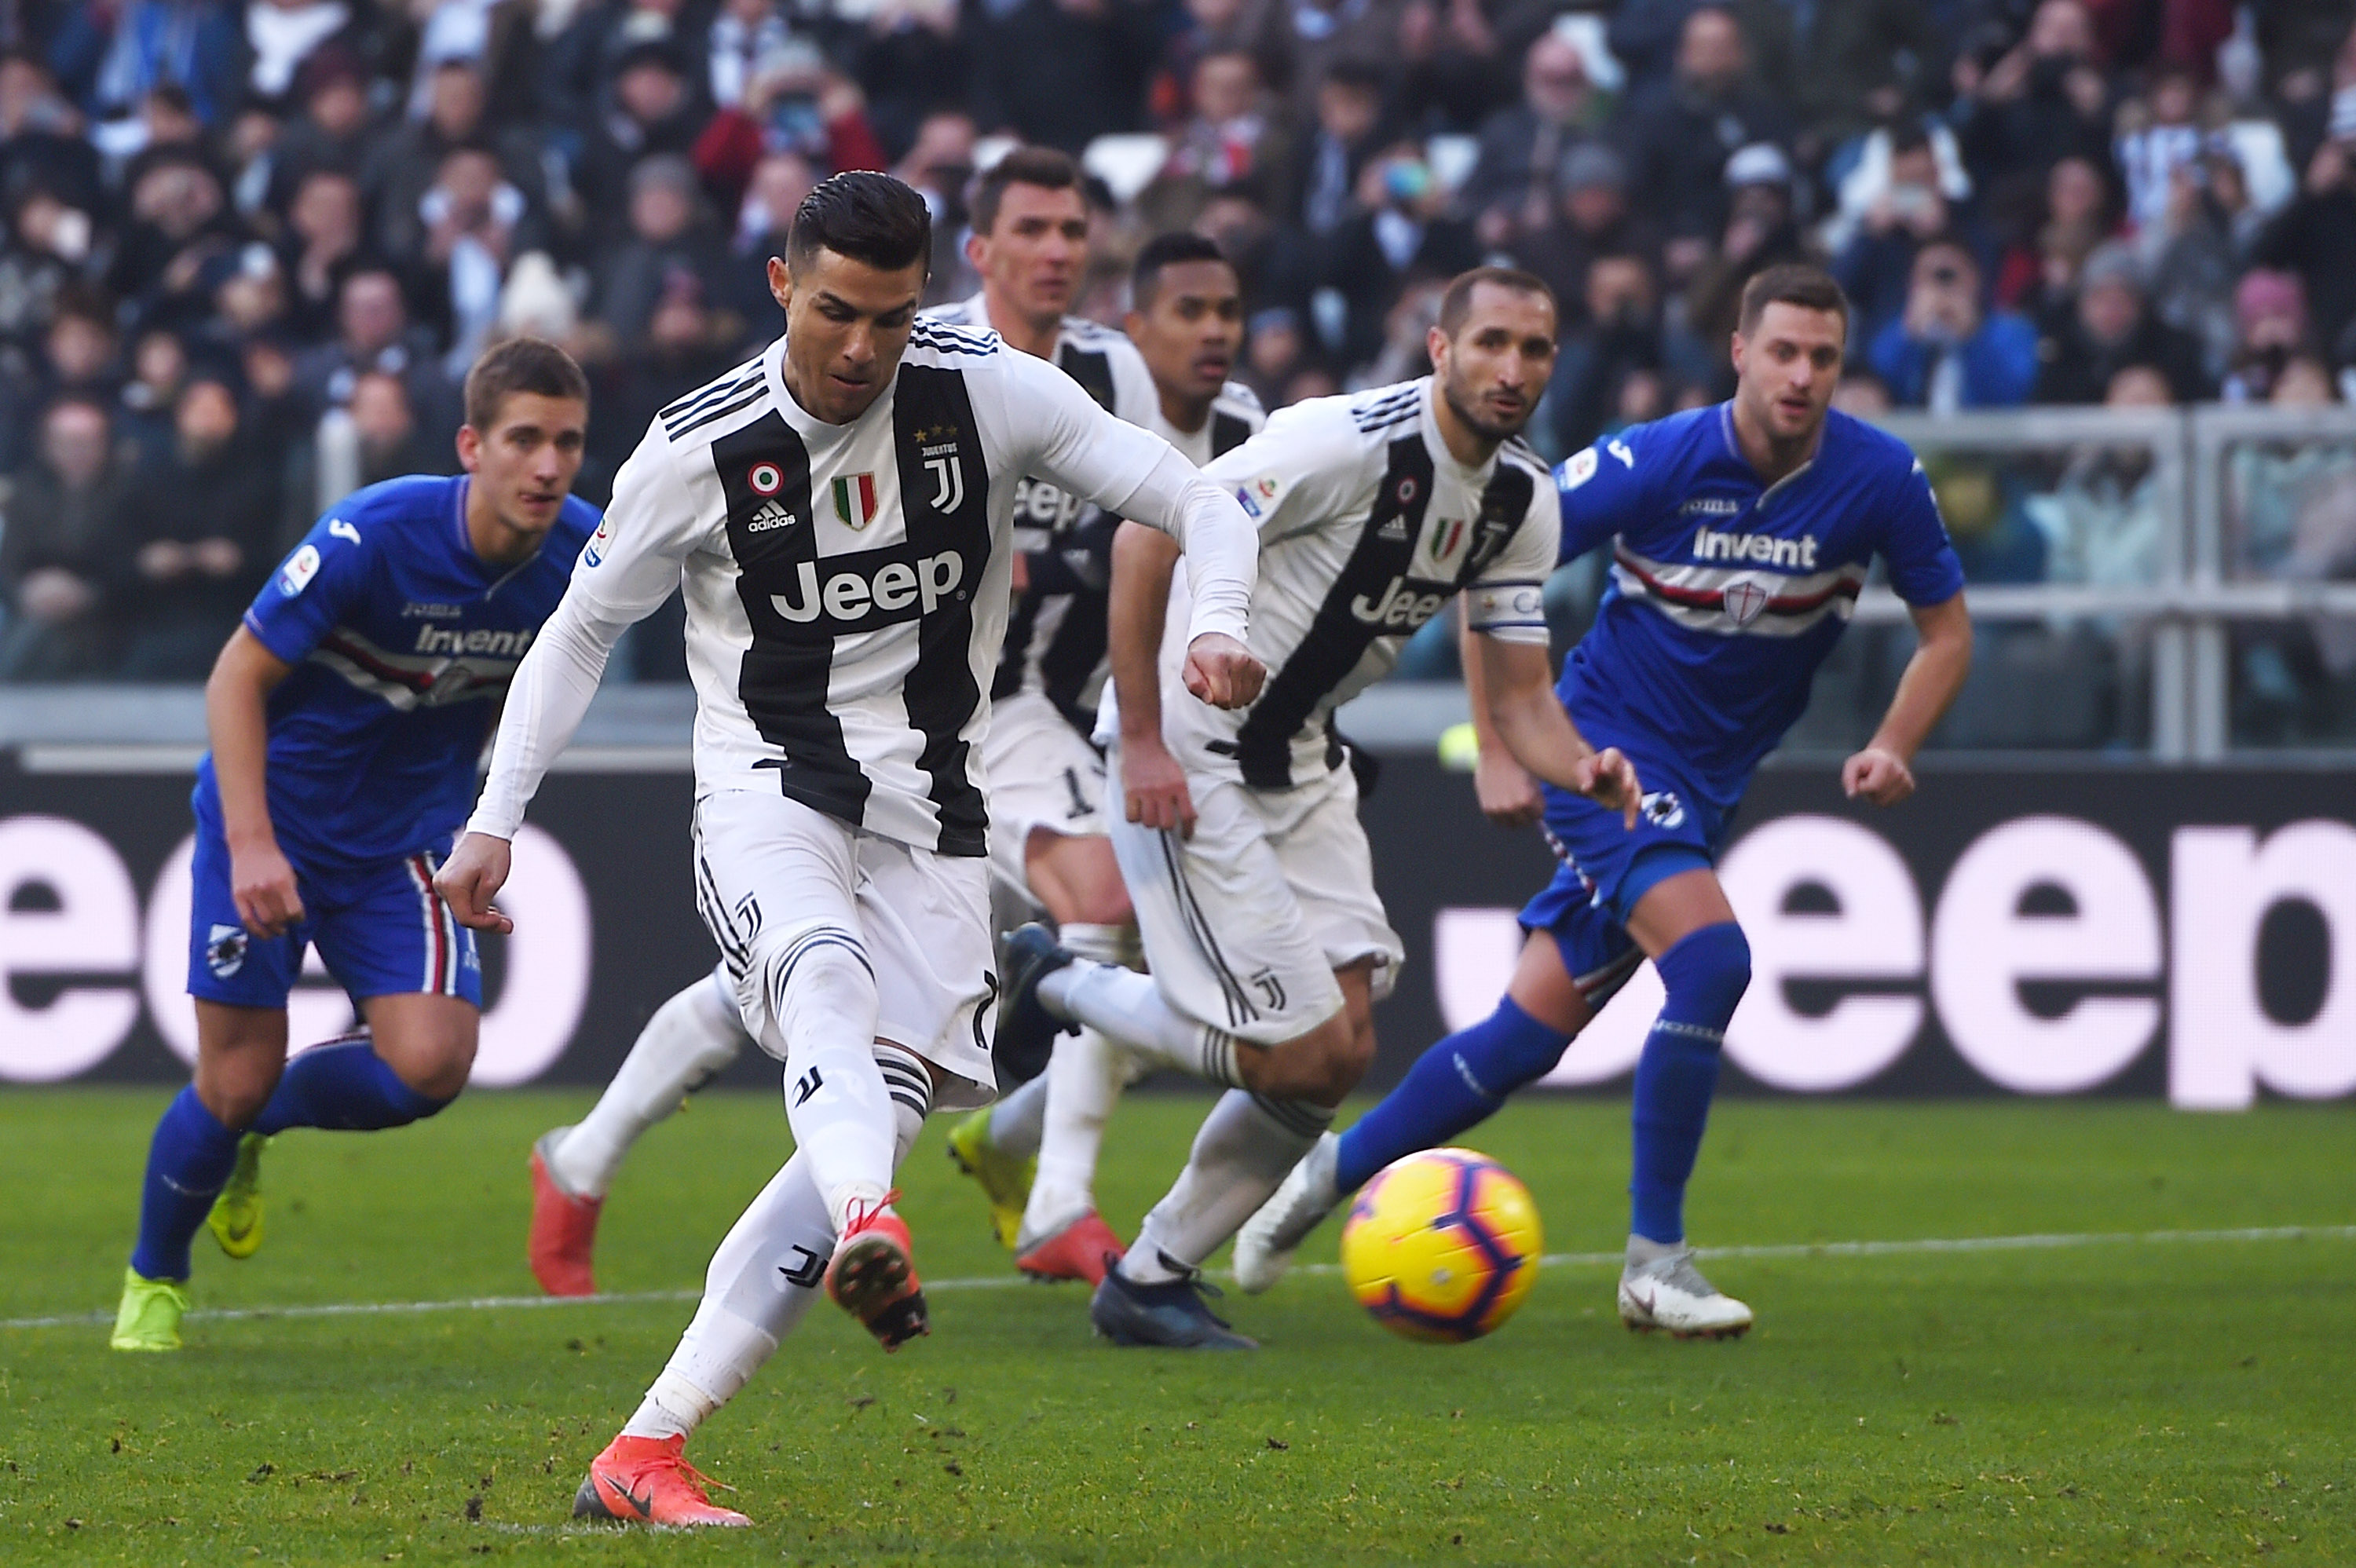 Soi kèo, nhận định Sampdoria vs Juventus 23h00 ngày 26/05/2019